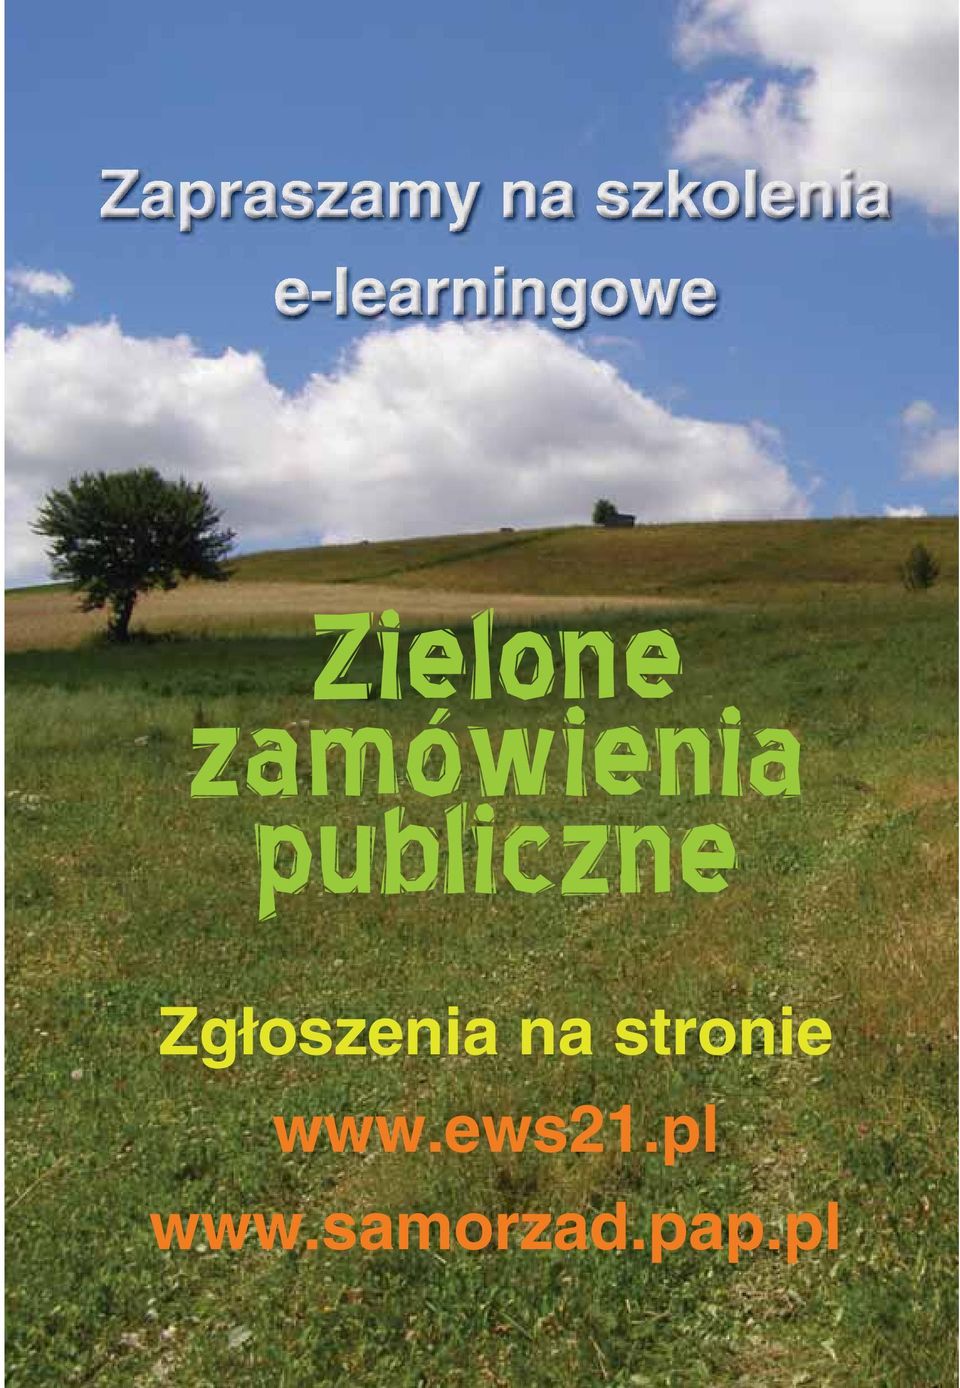 Zgłoszenia na stronie www.ews21.pl www.